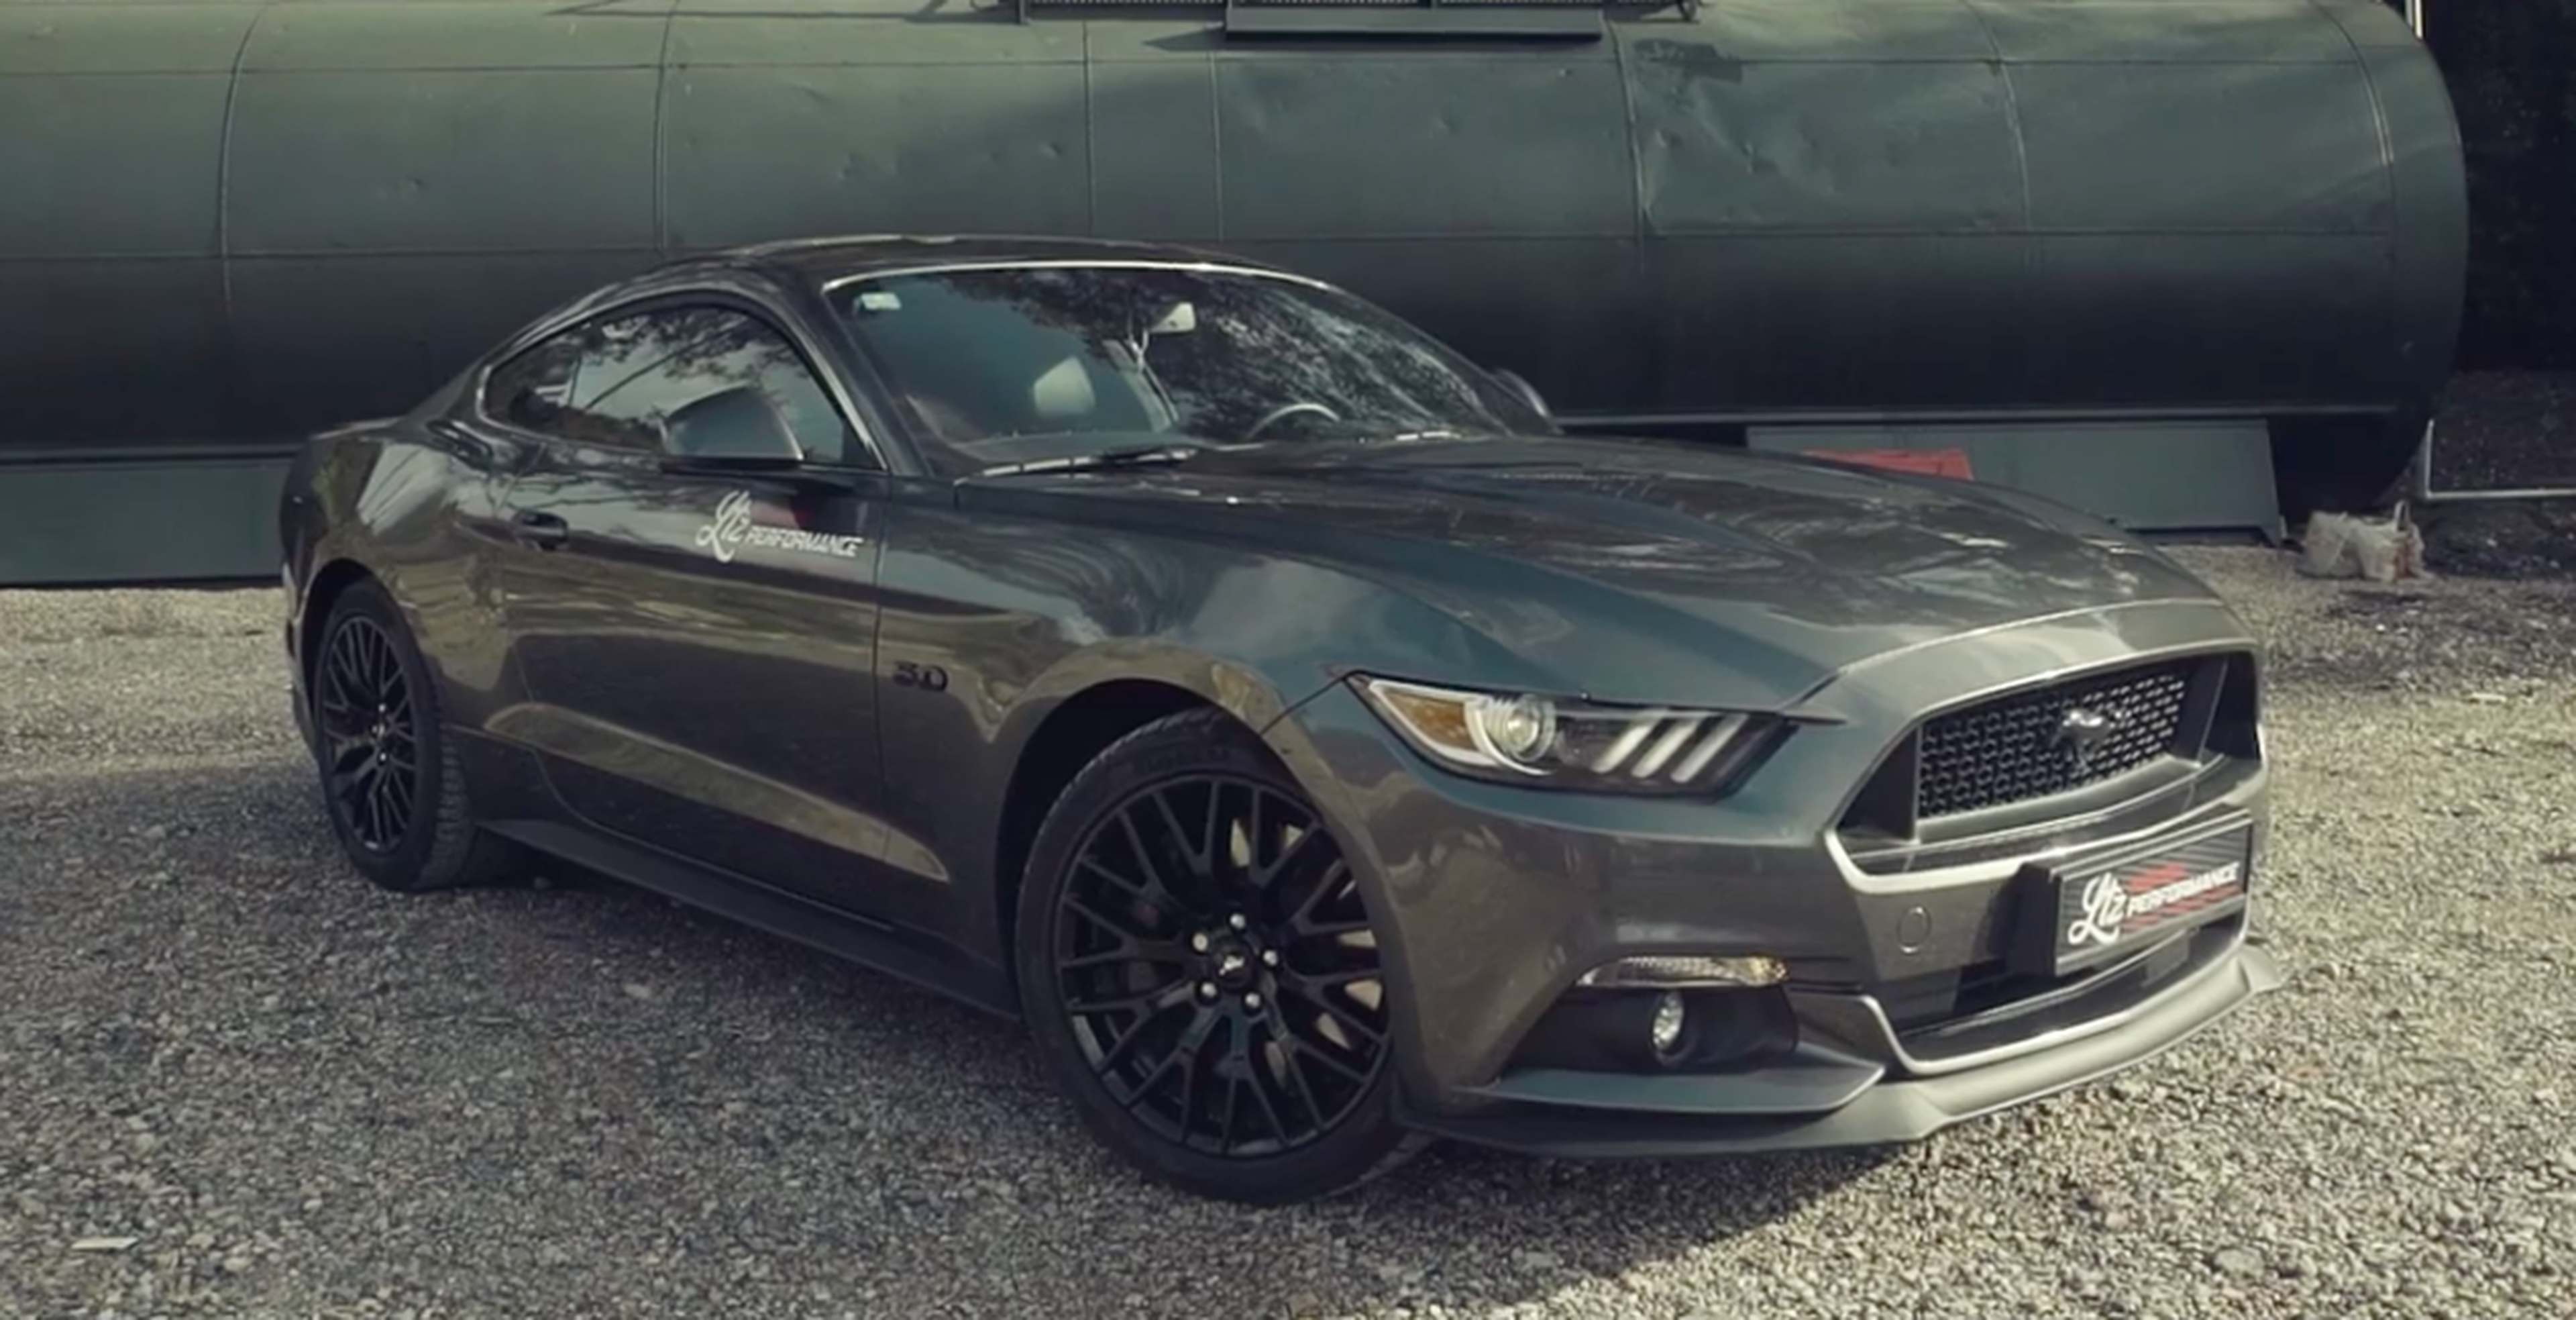 VÍDEO: ¿Se puede mejorar el sonido de un Ford Mustang GT? Ya os adelanto que sí